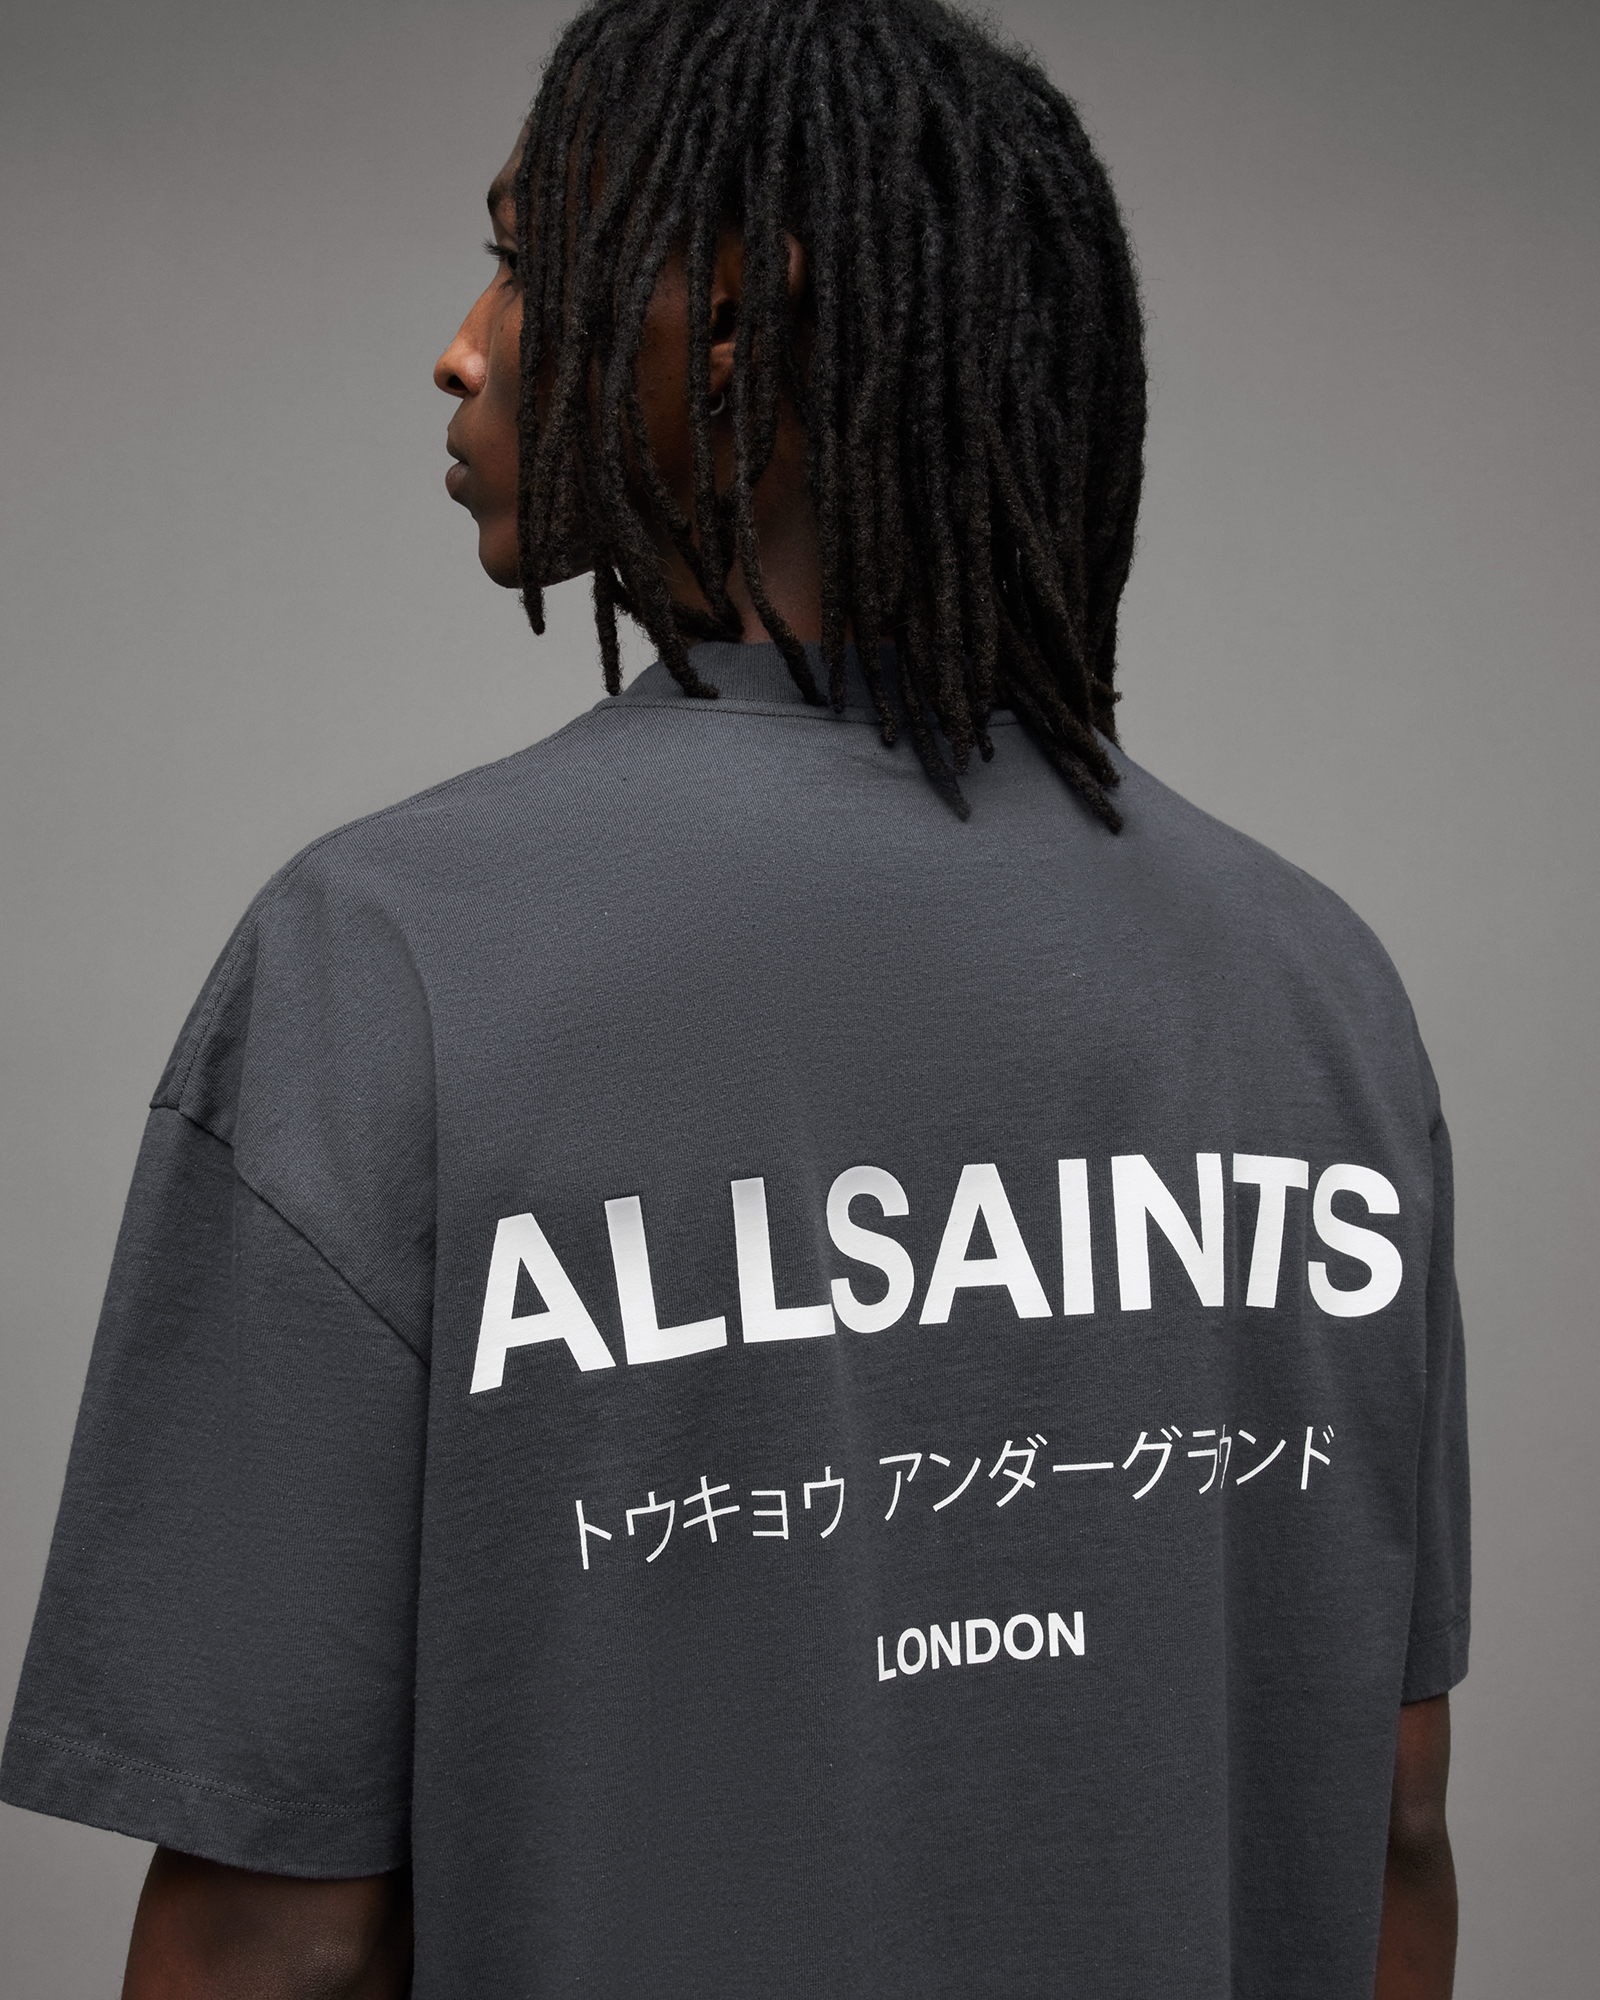 AllSaints Underground Oversized Crew Neck T-Shirt